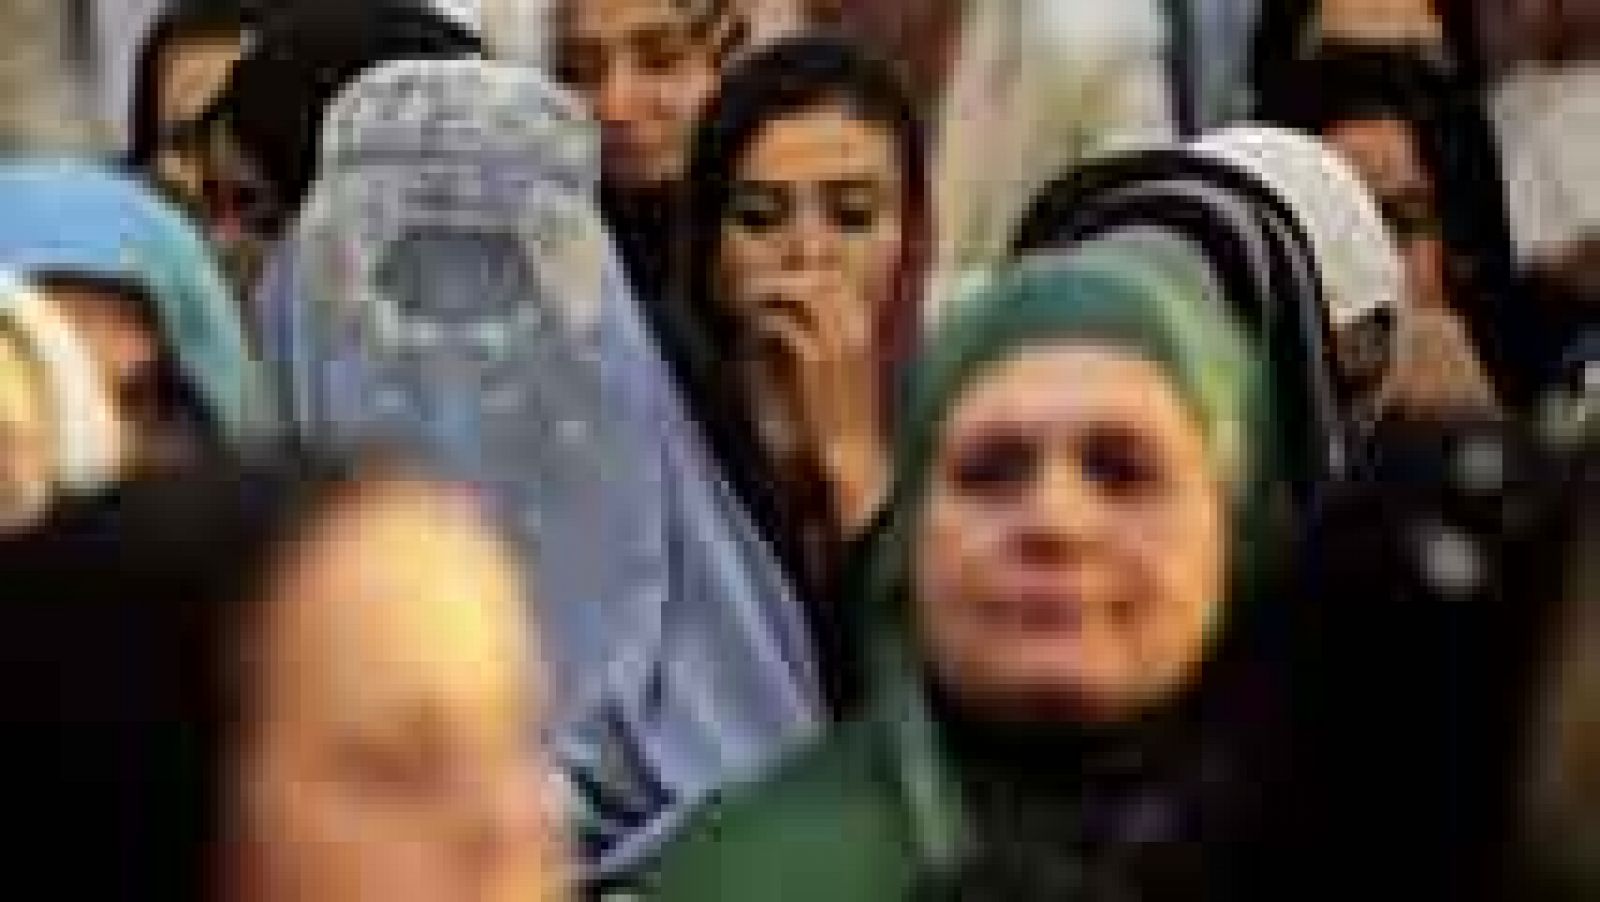 El debate abierto sobre prohibir el burka enfrenta a seguridad y libertad religiosa